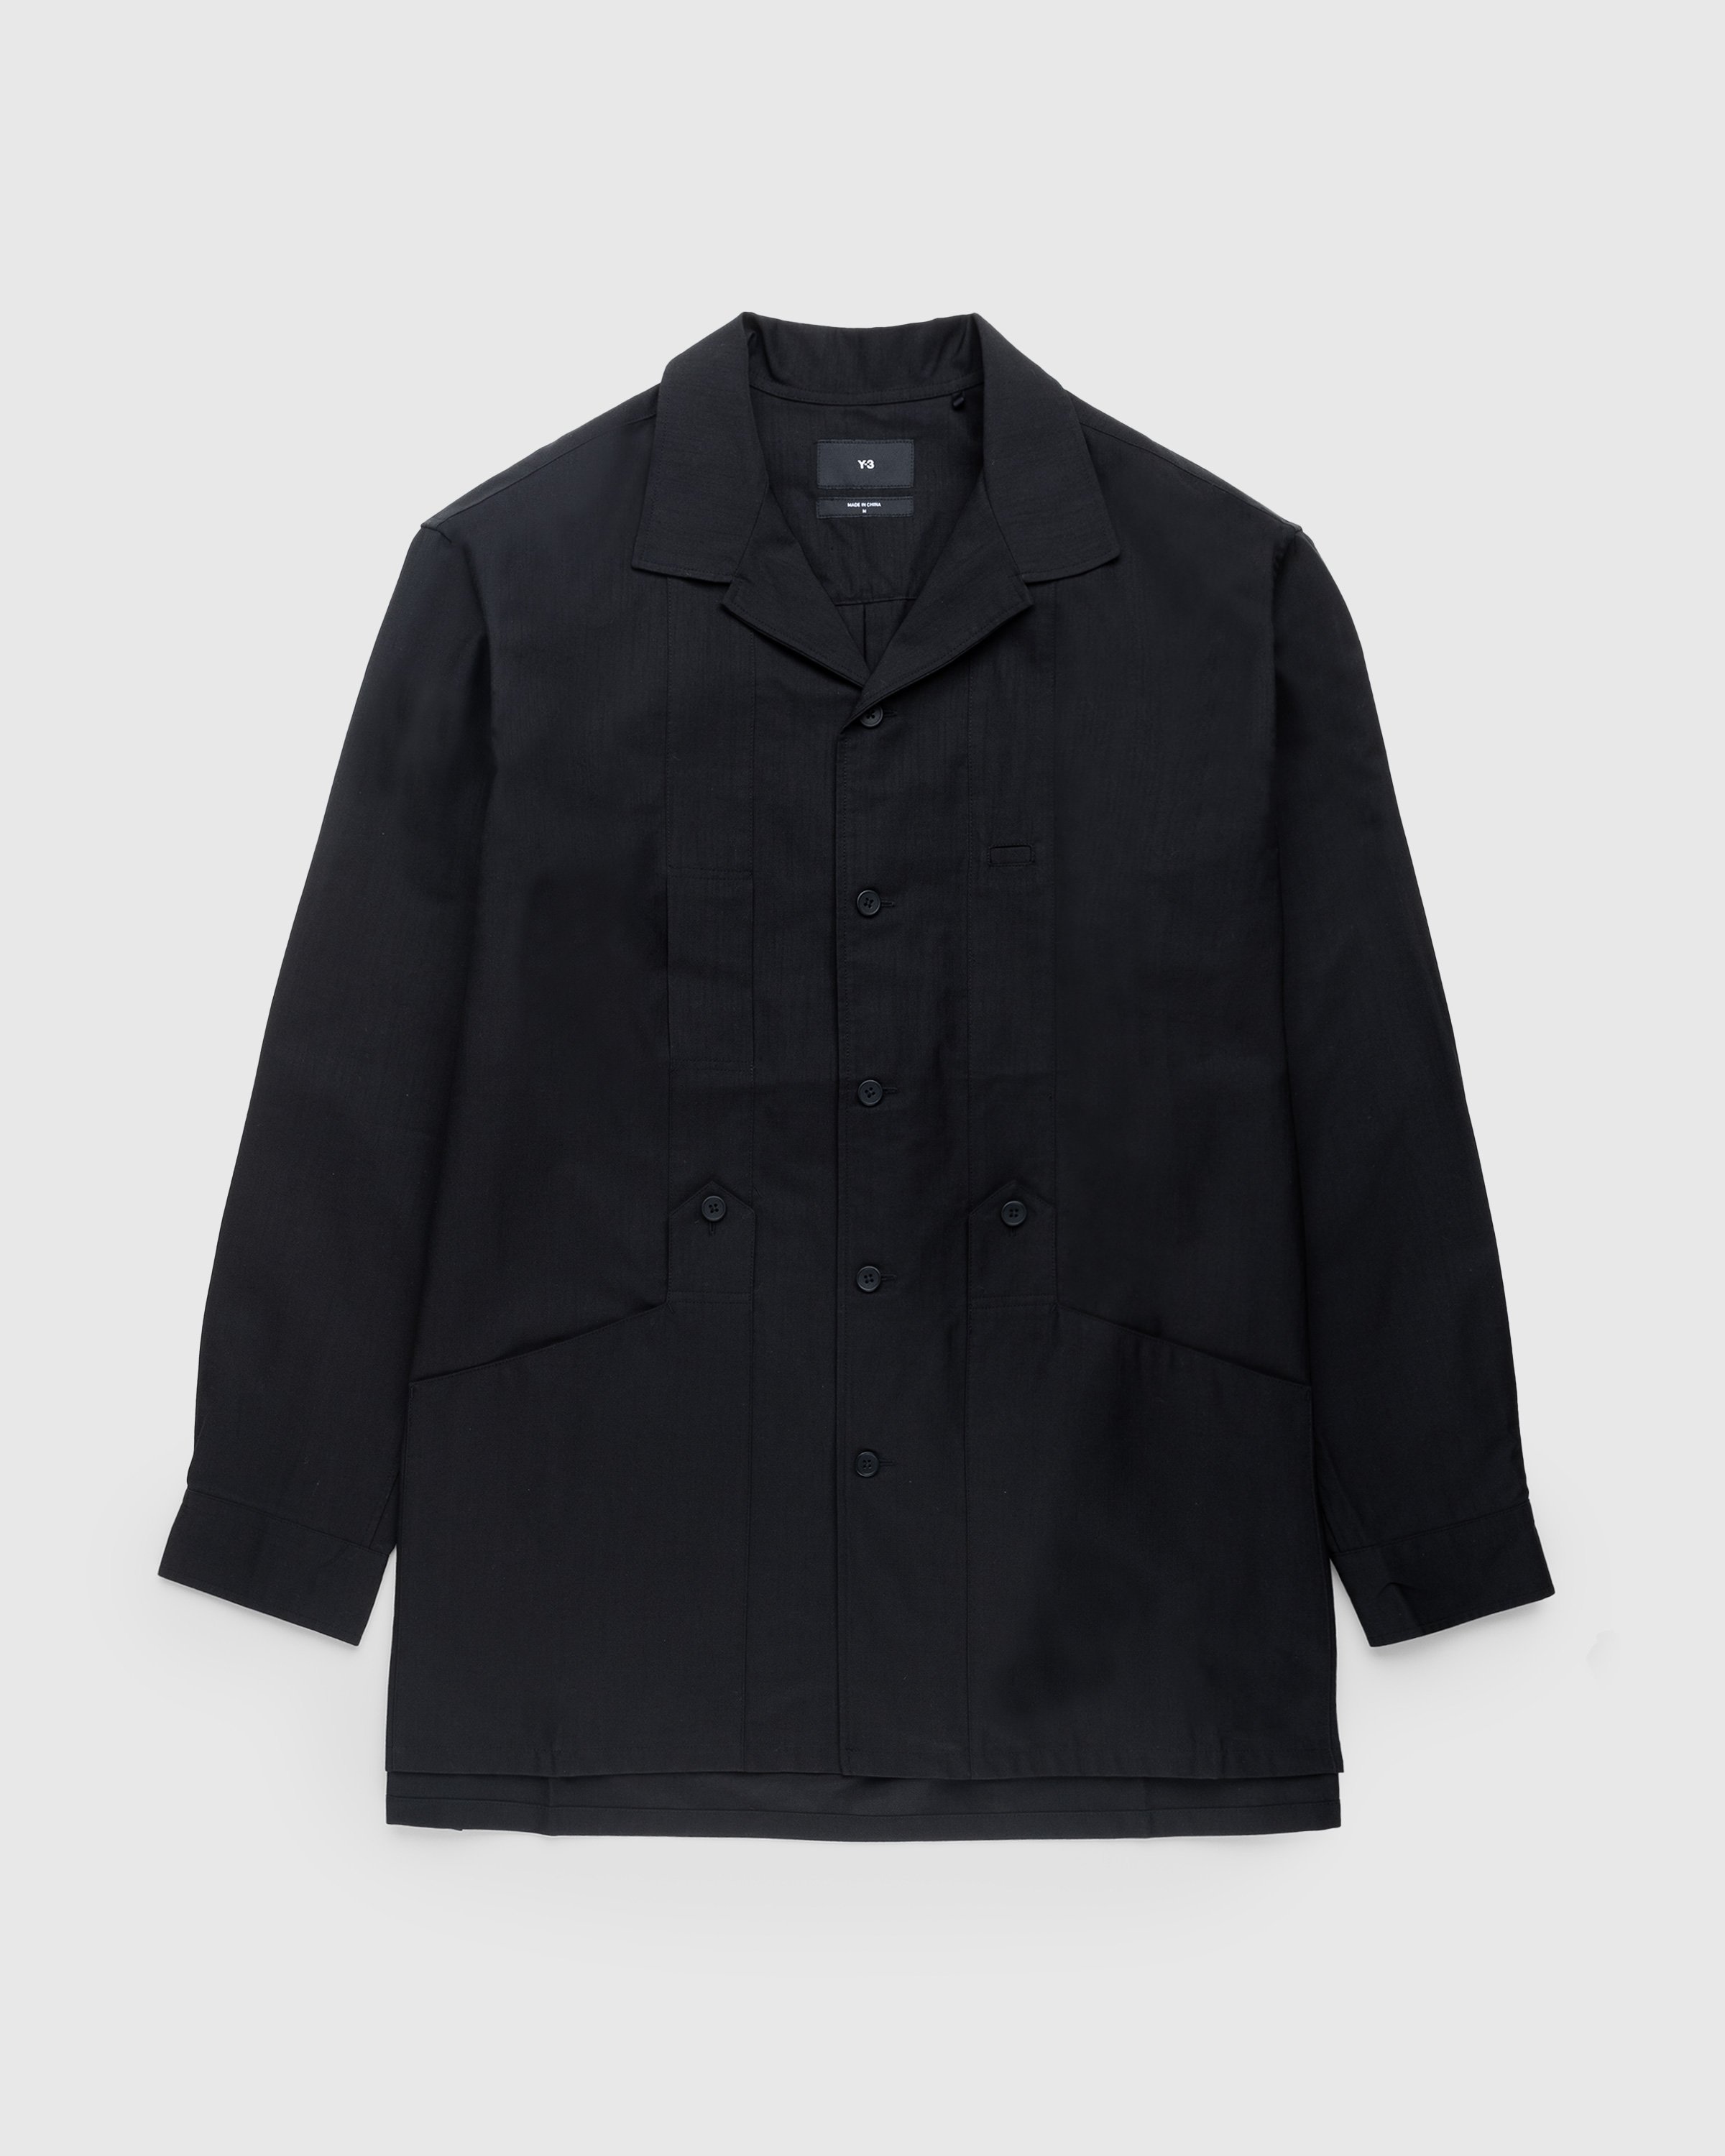 Y-3 - Longsleeve Workwear Shirt Black - Clothing - Black - Image 1